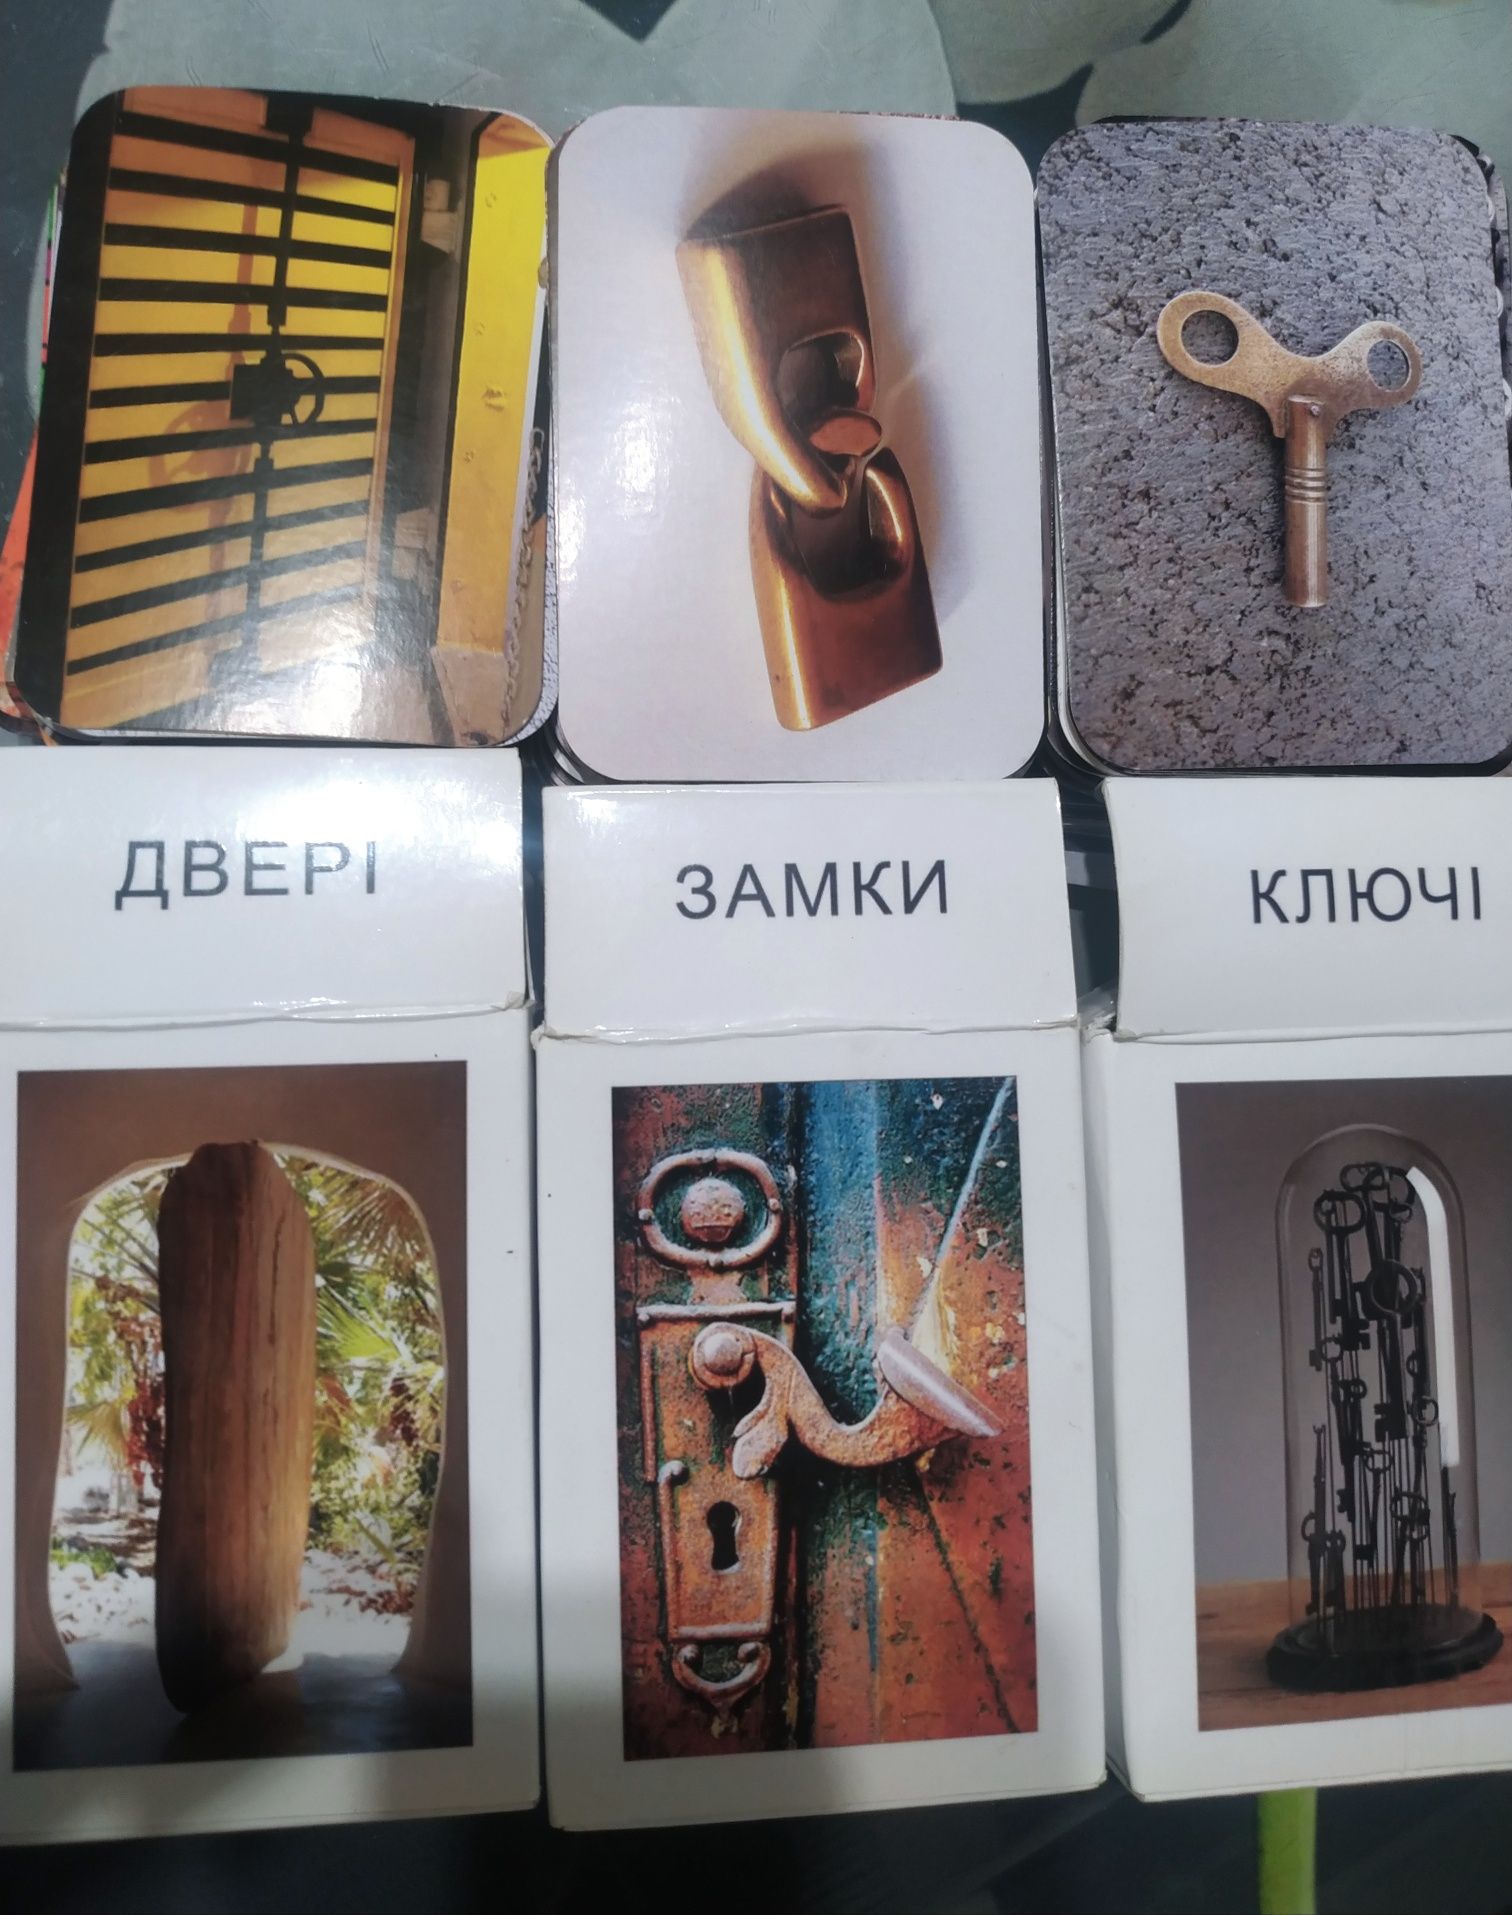 Метафоричні асоціативні карти "Двері", "Замки" та "Ключі".